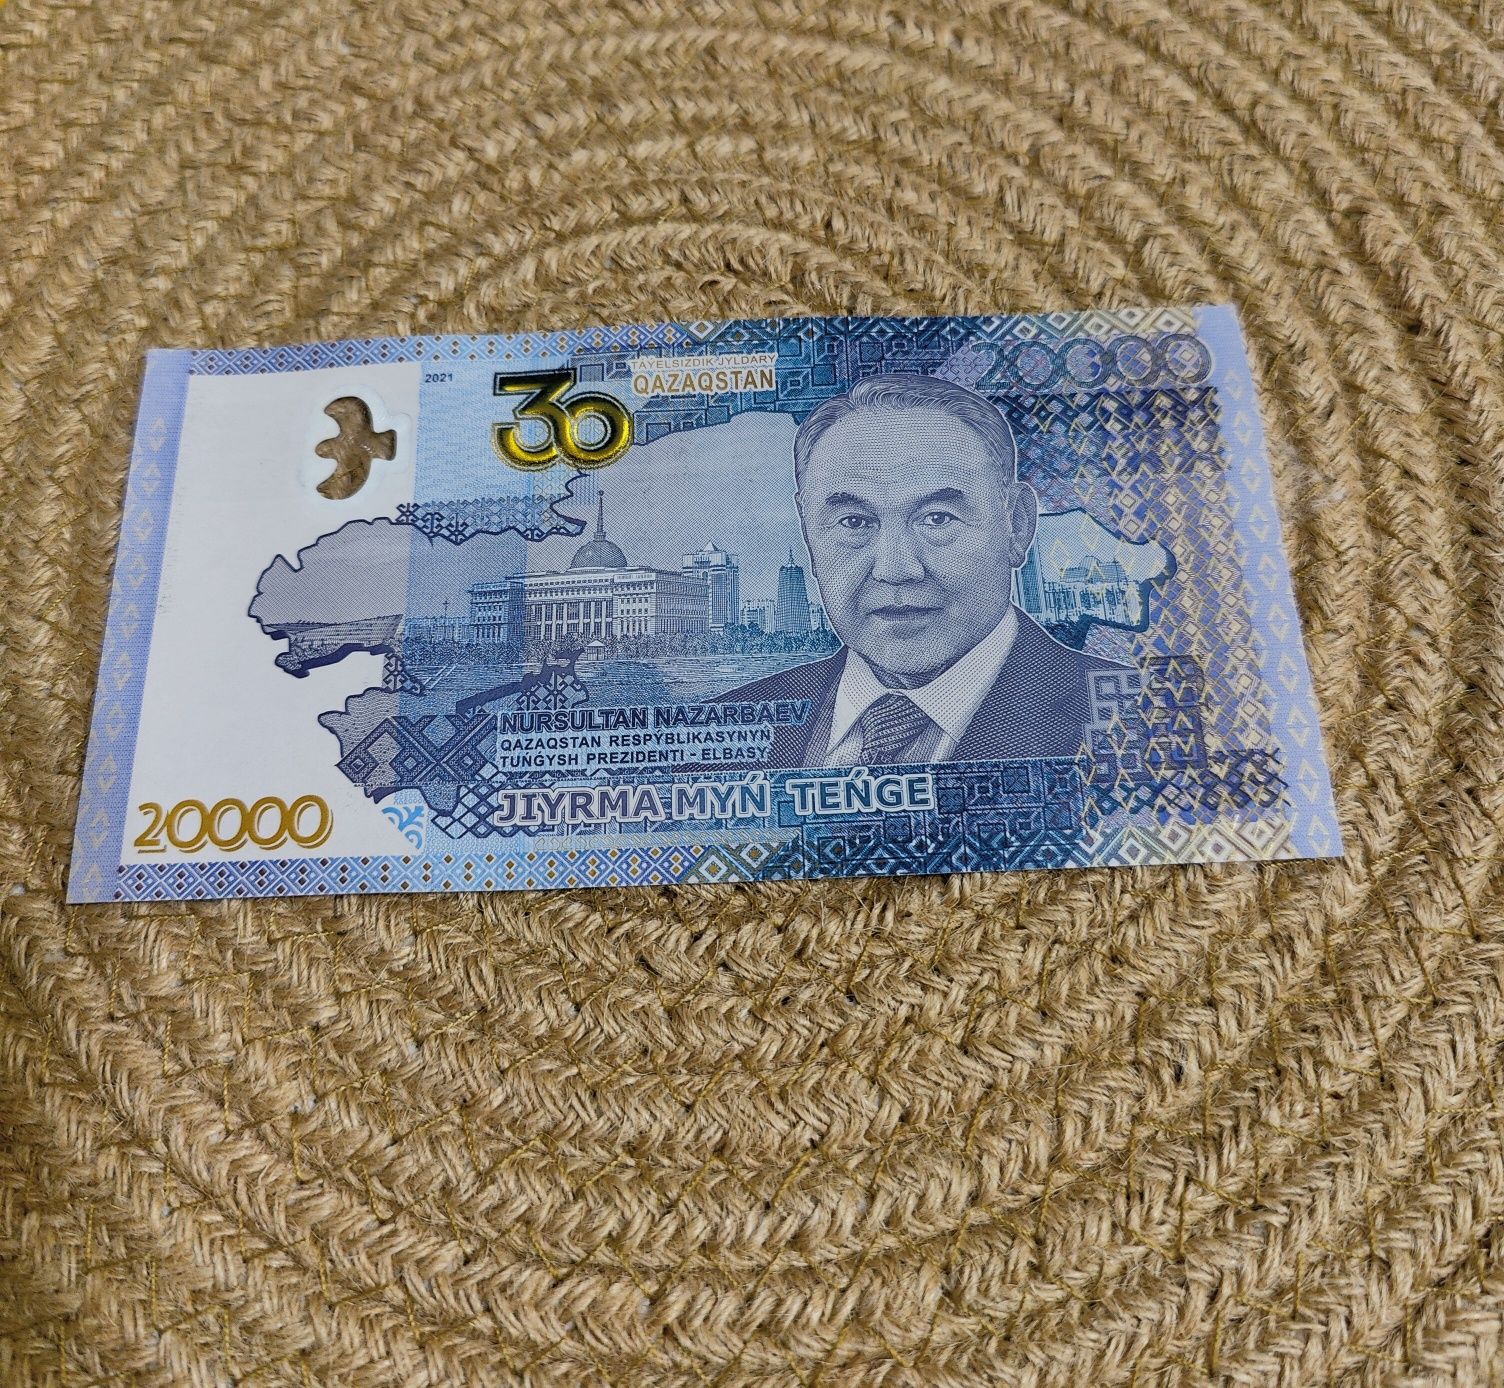 Юбилейная банкнота номиналом 20 000 тенге